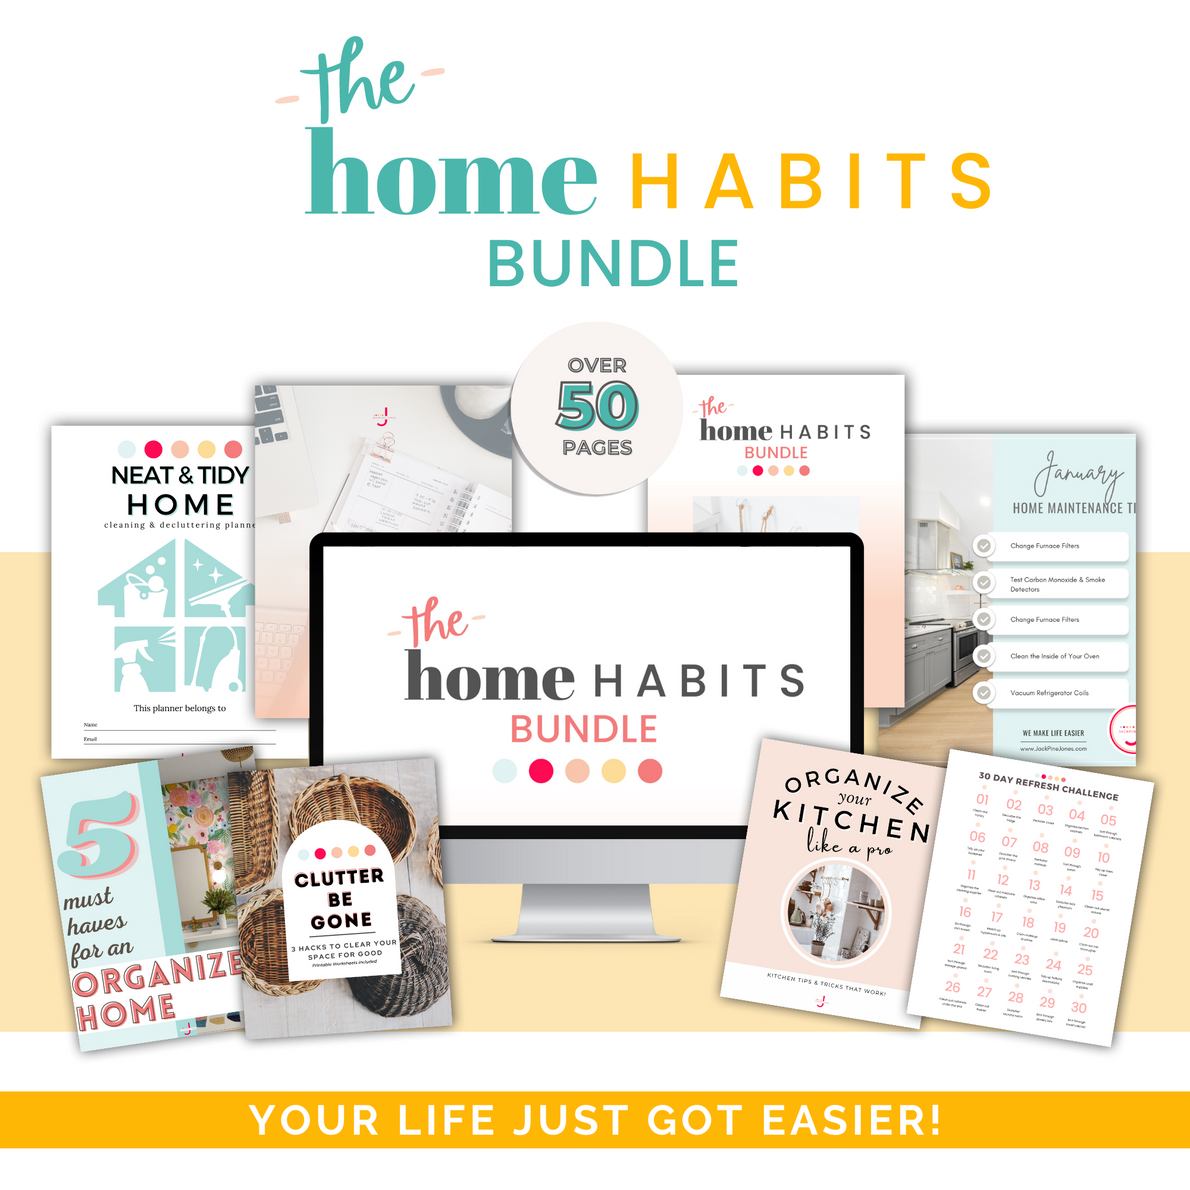 Home Habits Bundle